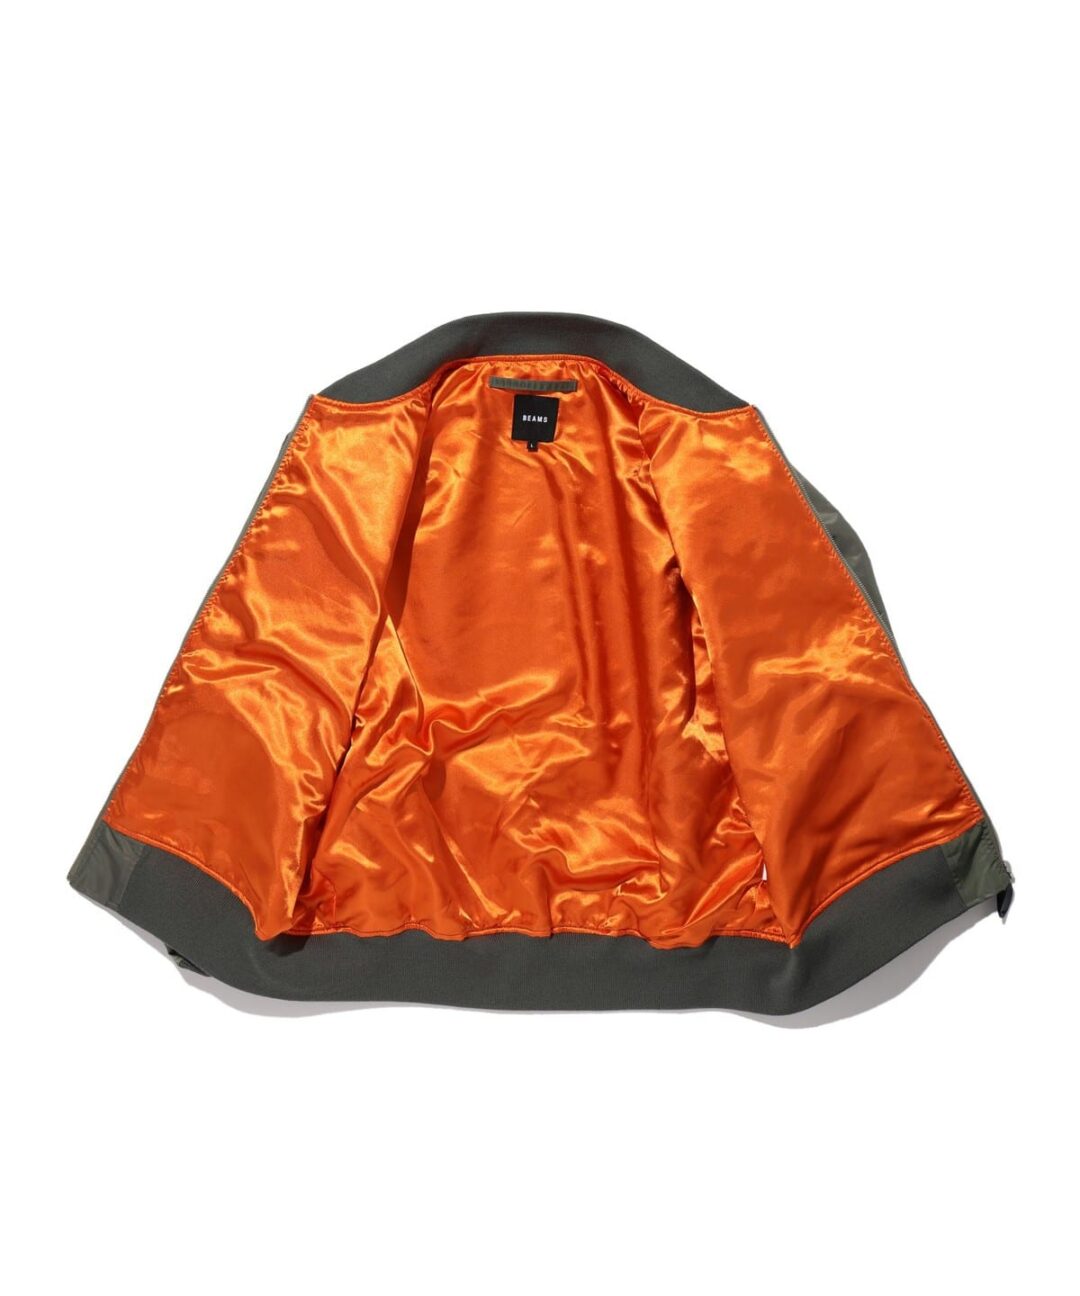 BEAMSからクレイジーパターン仕様のMA-1タイプフライトジャケットが1月下旬発売 (ビームス)